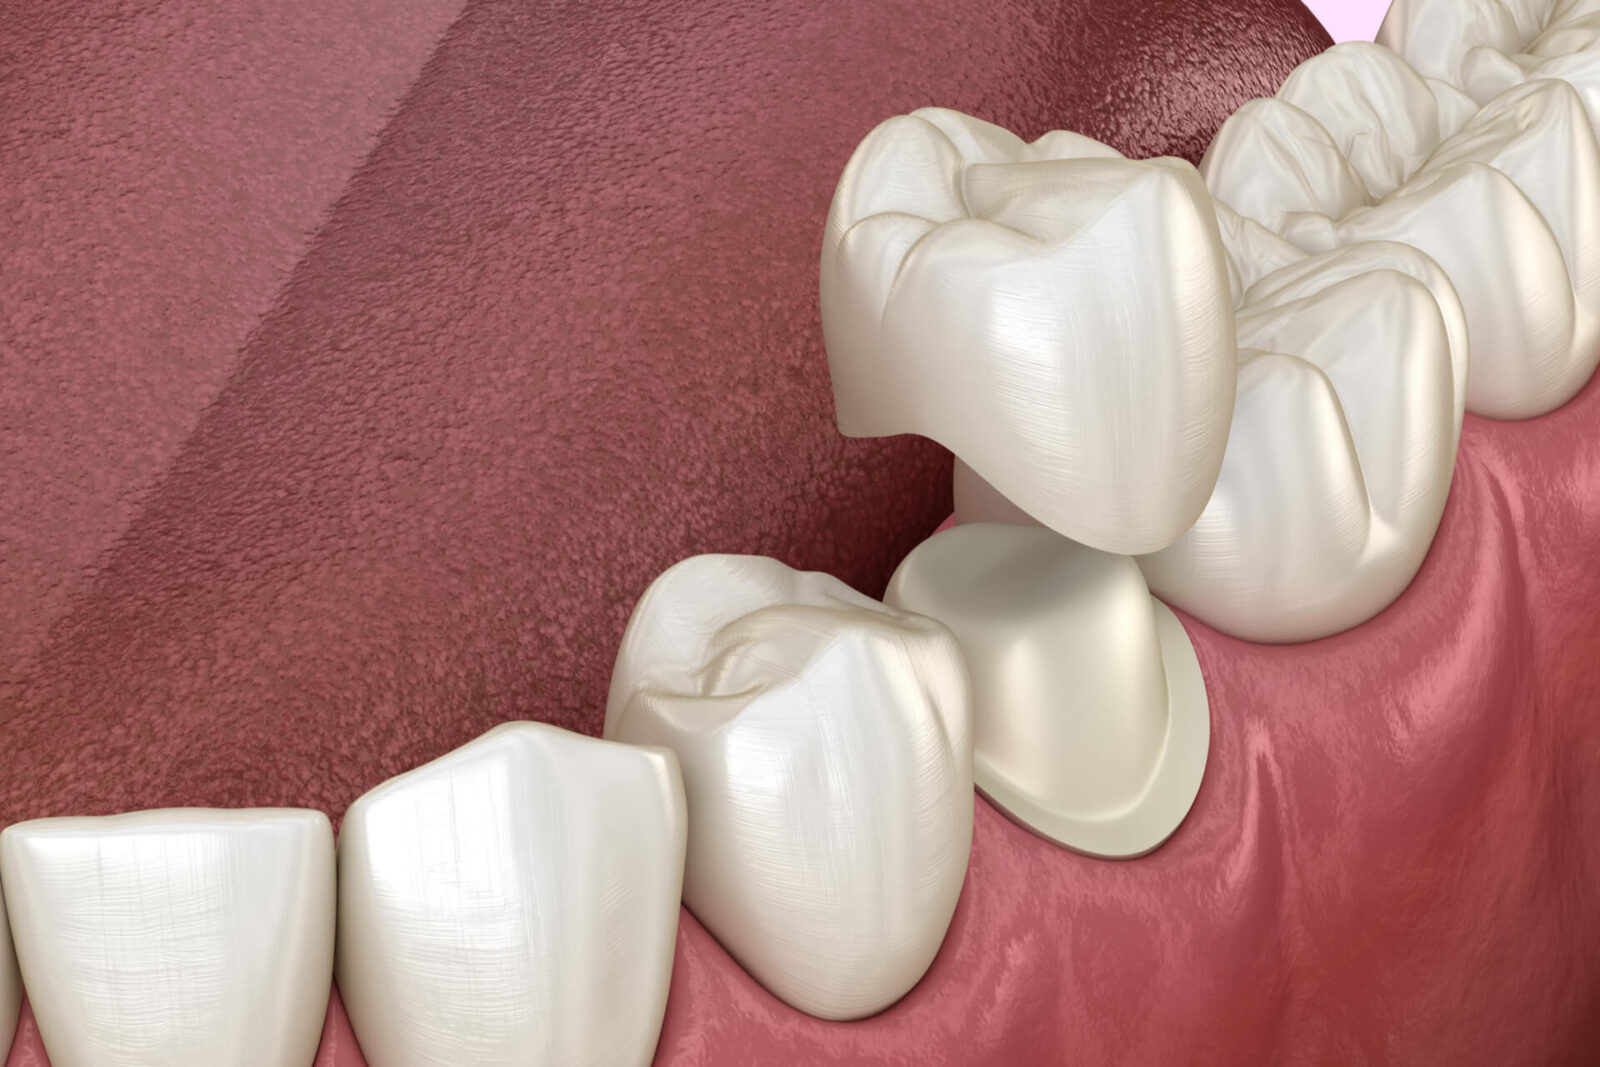 Preparated premolar tooth and dental metal-ceramic crown